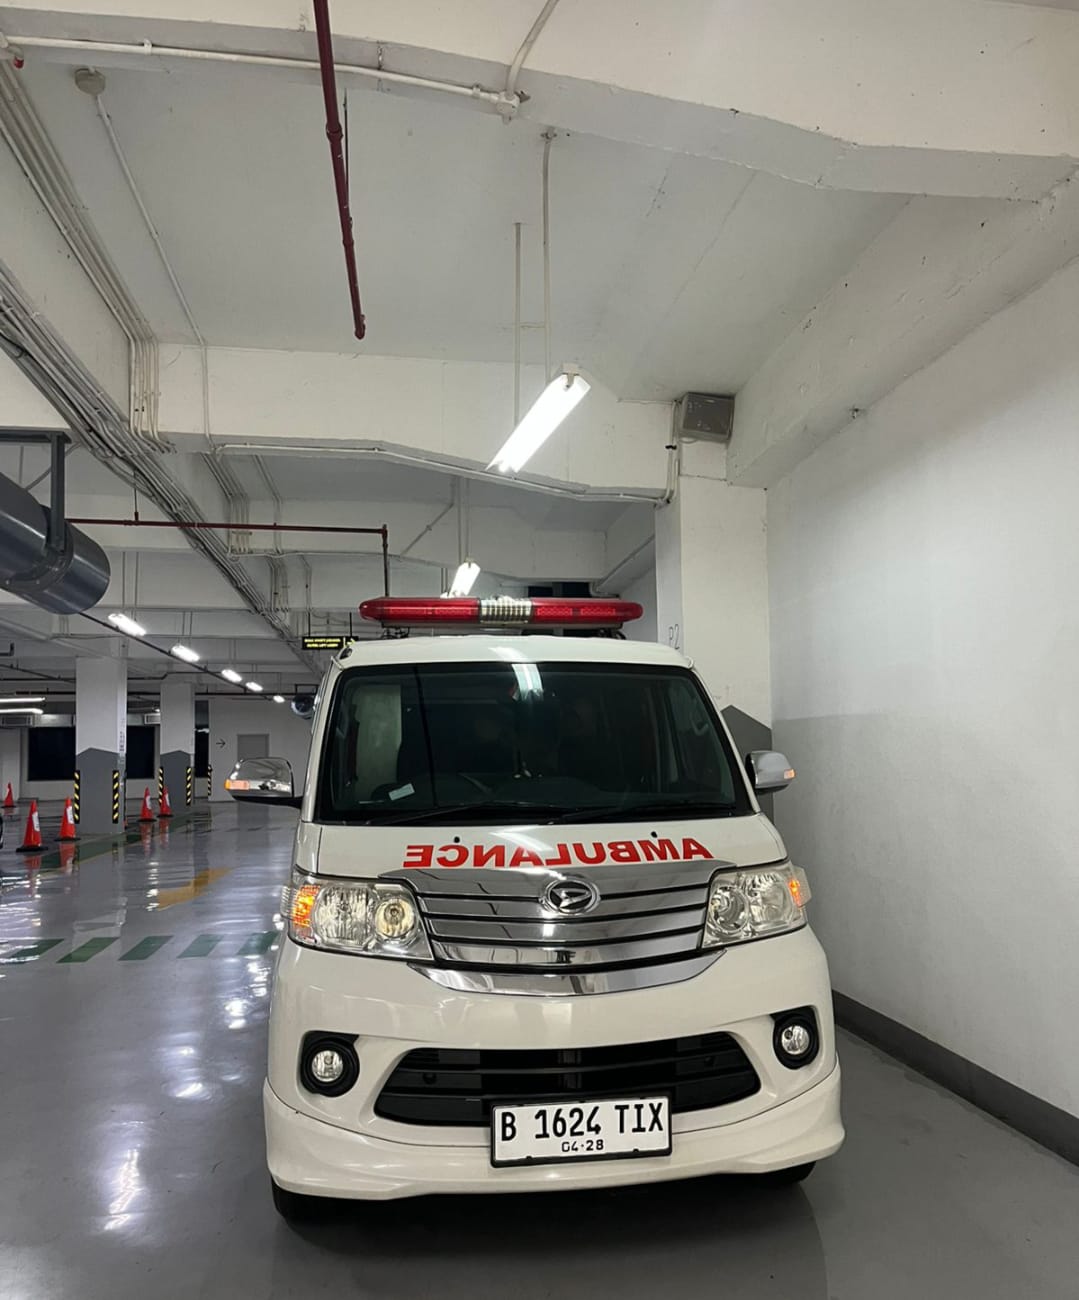 Rental Ambulans di Bekasi Panggilan 24 jam Fast Respons, Hubungi WA 085211551088